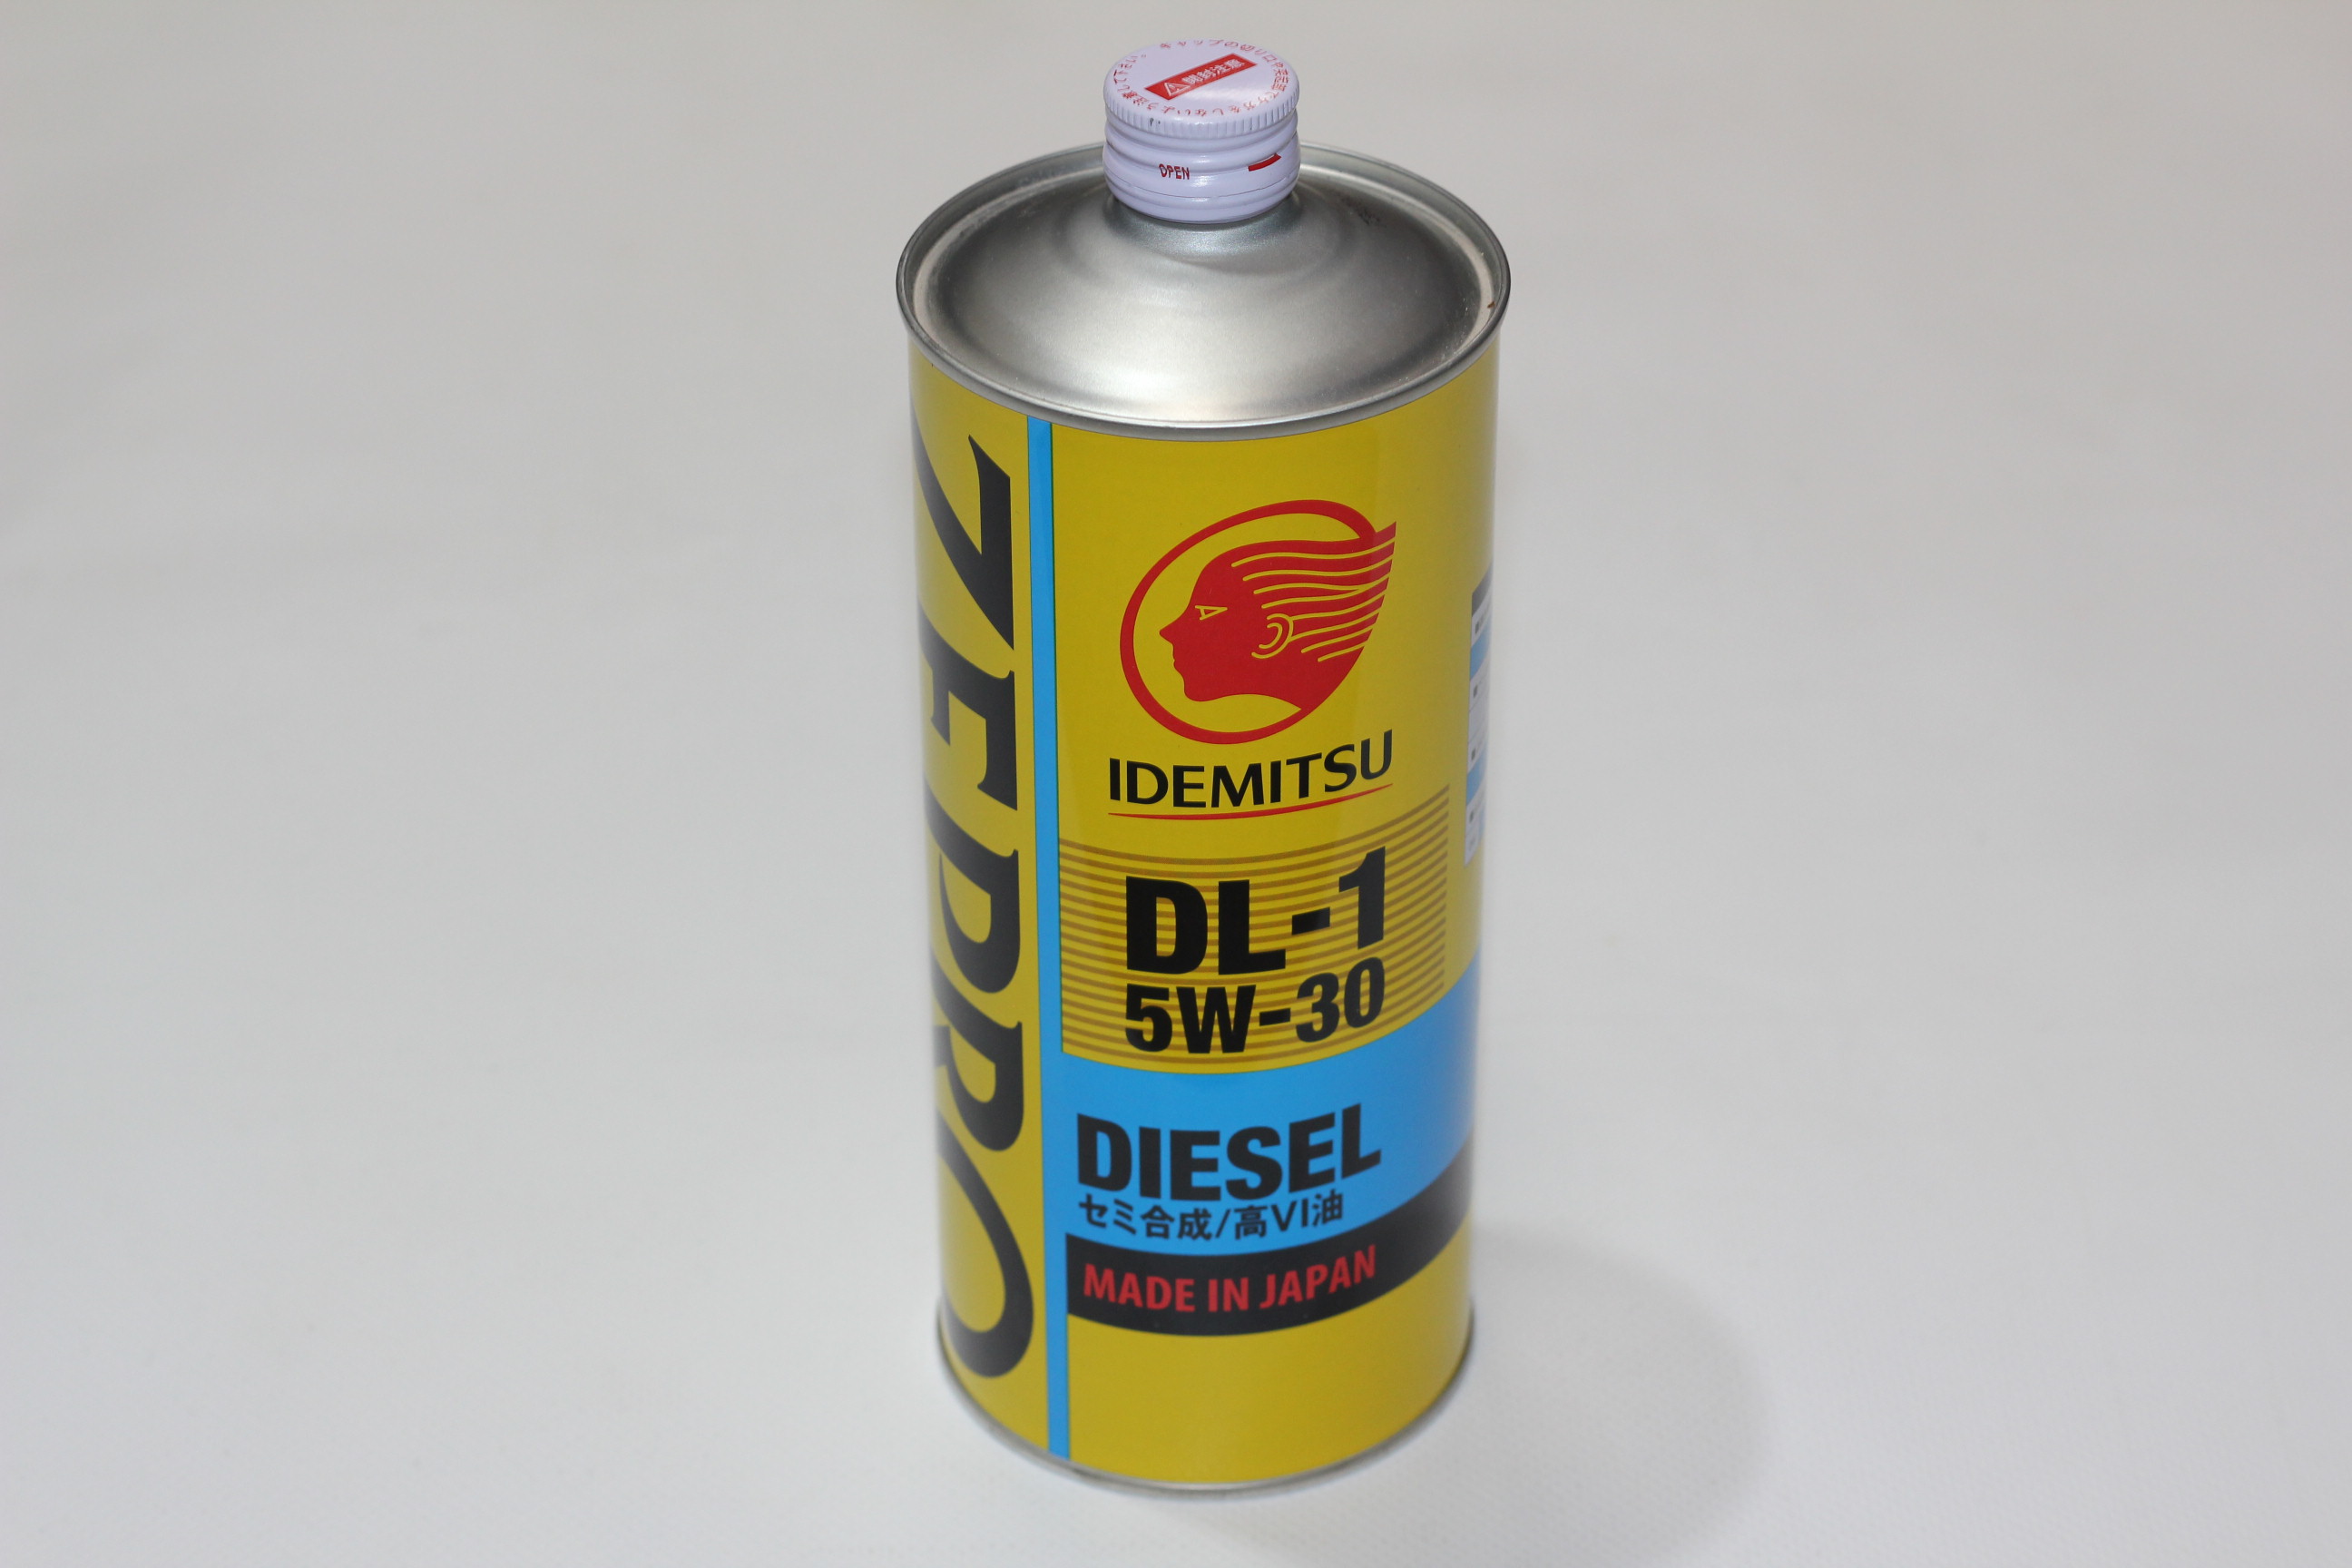 5w30 Idemitsu Zepro Diesel DL-1 2156-001. Idemitsu Zepro Diesel DL-1 5w30. 2156-004 Idemitsu. Масло моторное Idemitsu 5w-30 Zepro Diesel DL-1 полусинтетическое 20л. Масло идемитсу дизель